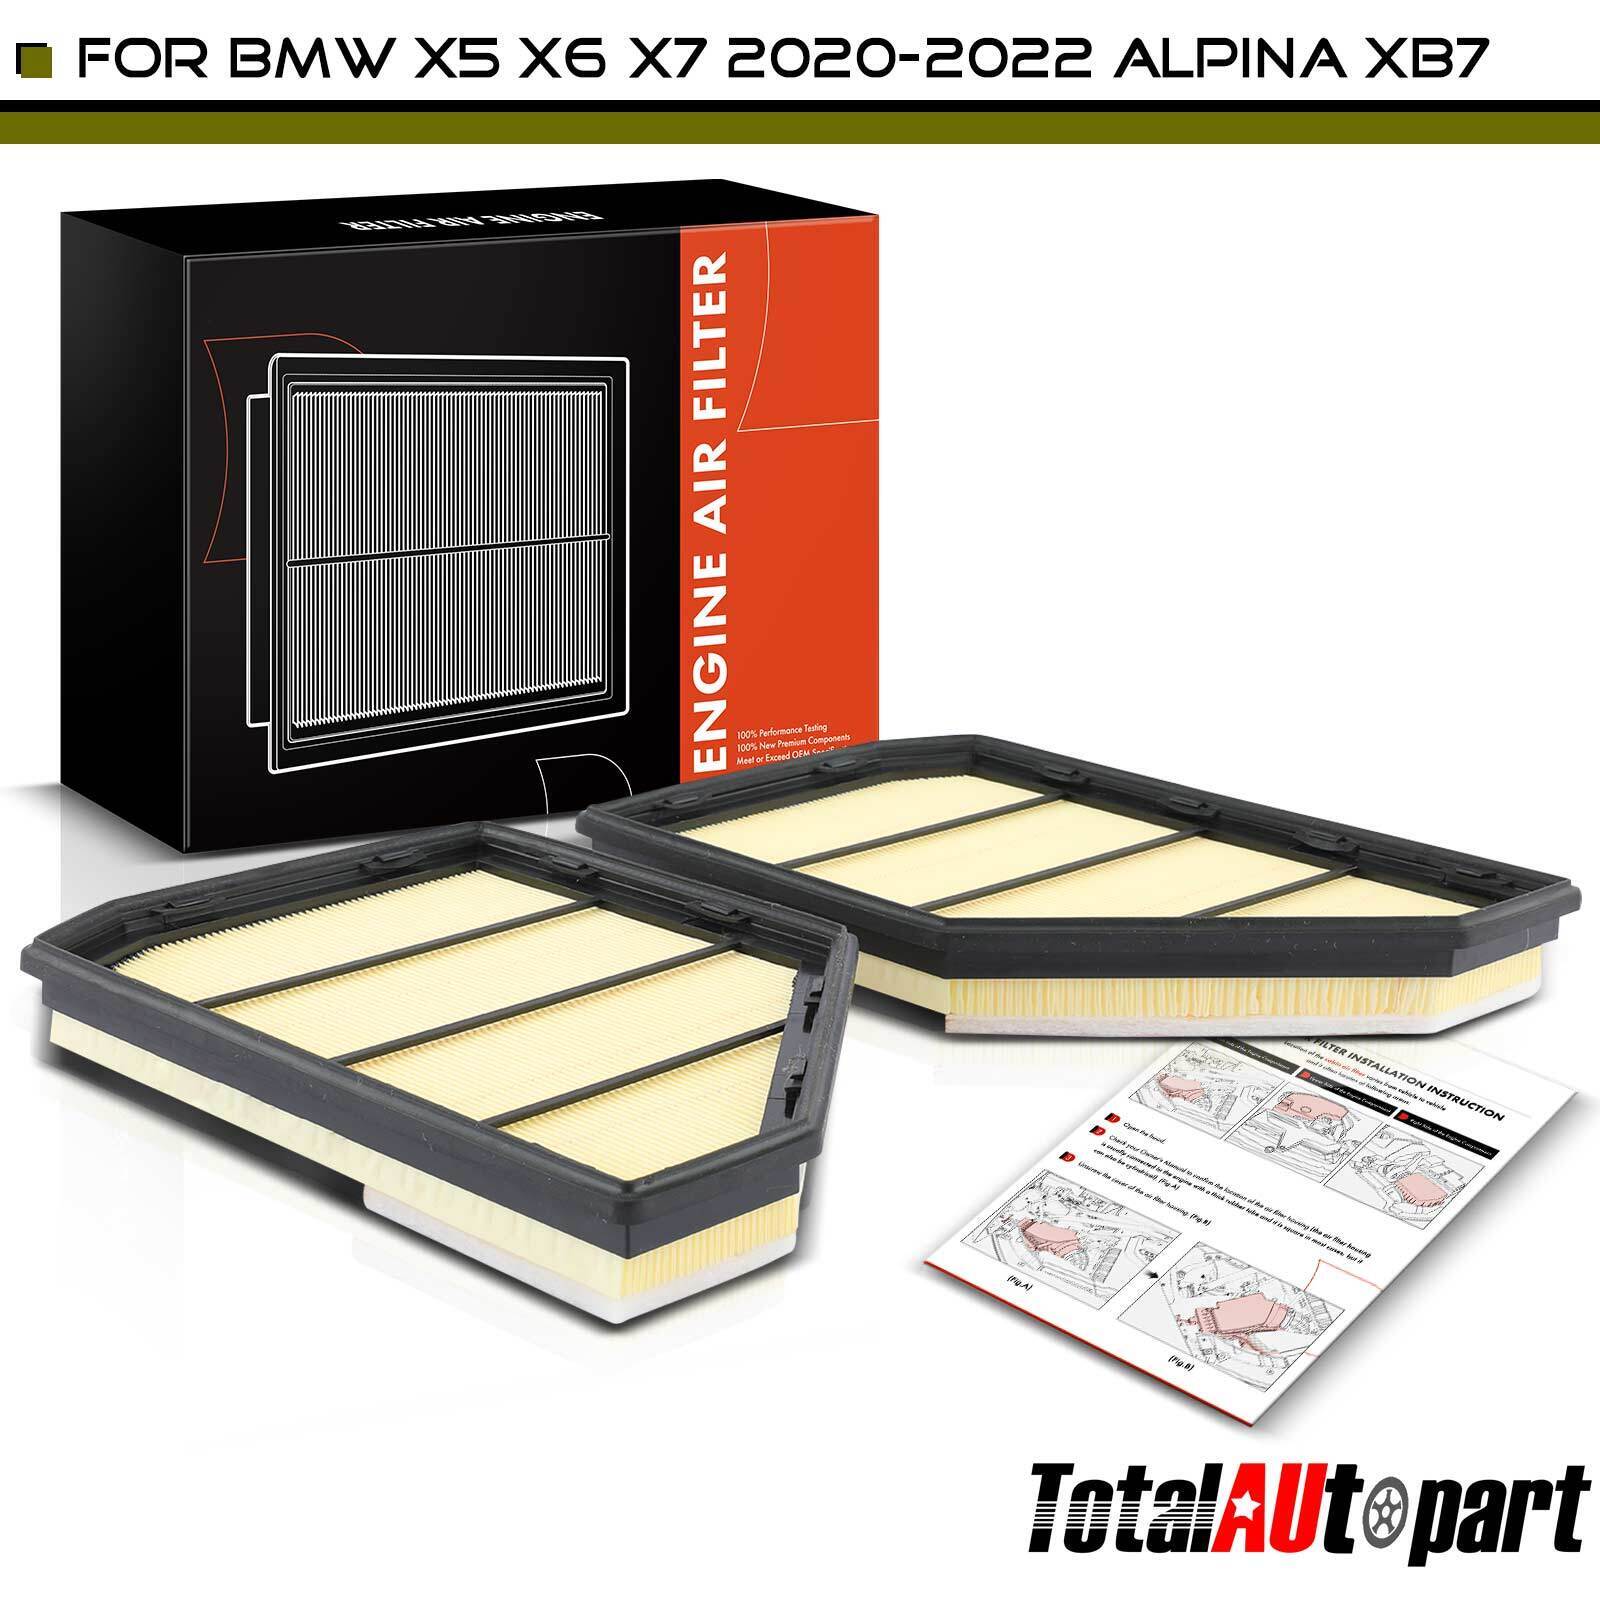 2x Engine Air Filter for BMW X5 G05 X6 G06 X7 G07 2020-2022 Alpina XB7 V8 4.4L